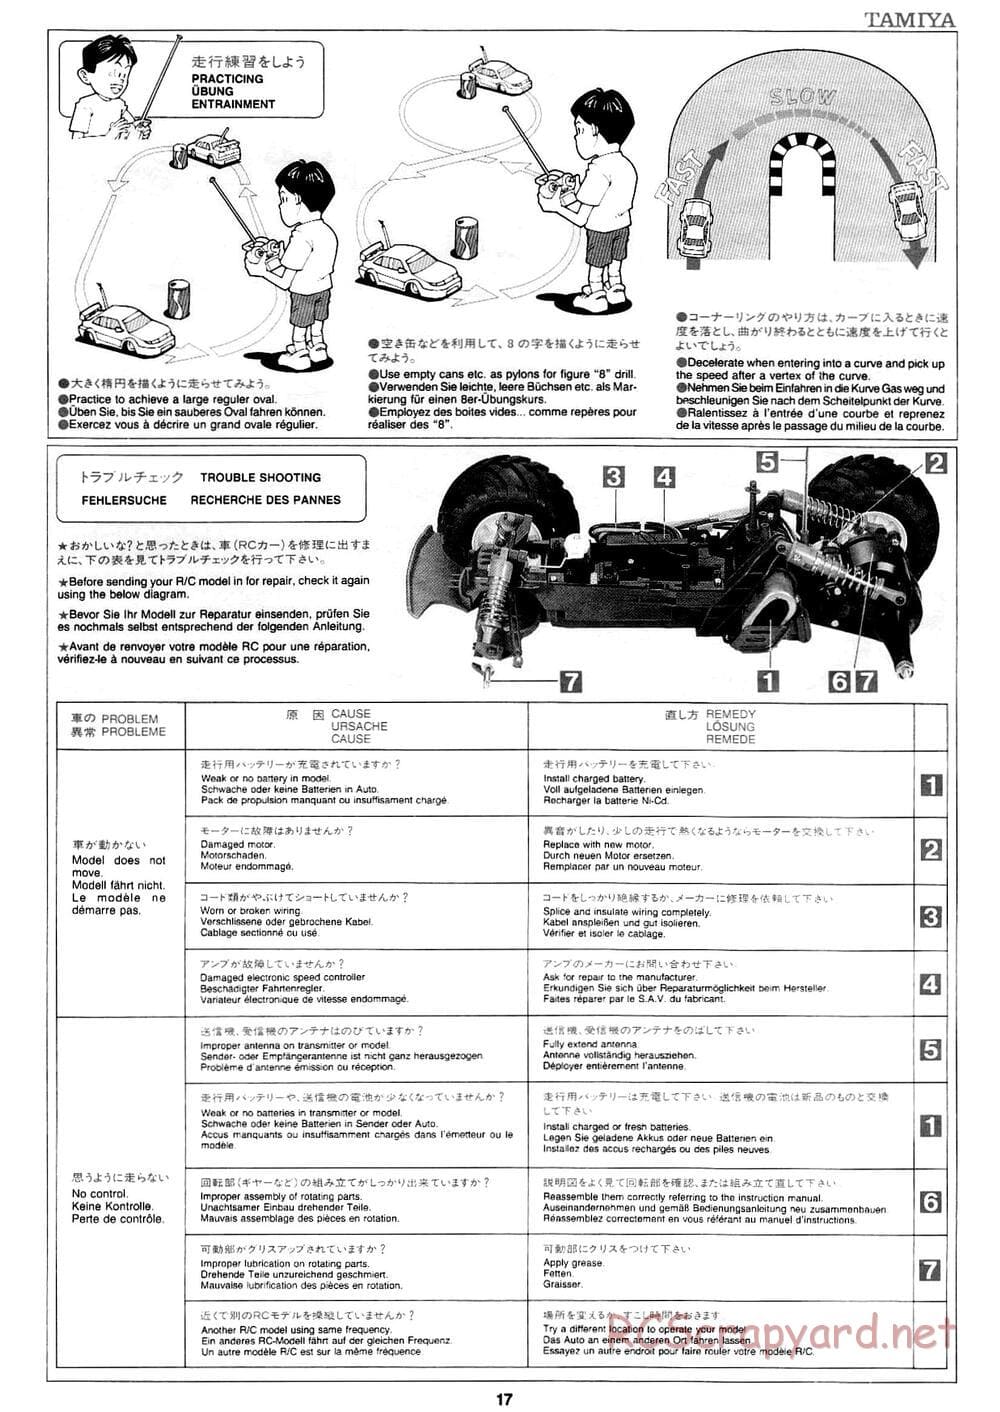 Tamiya - Mad Bull Chassis - Manual - Page 17